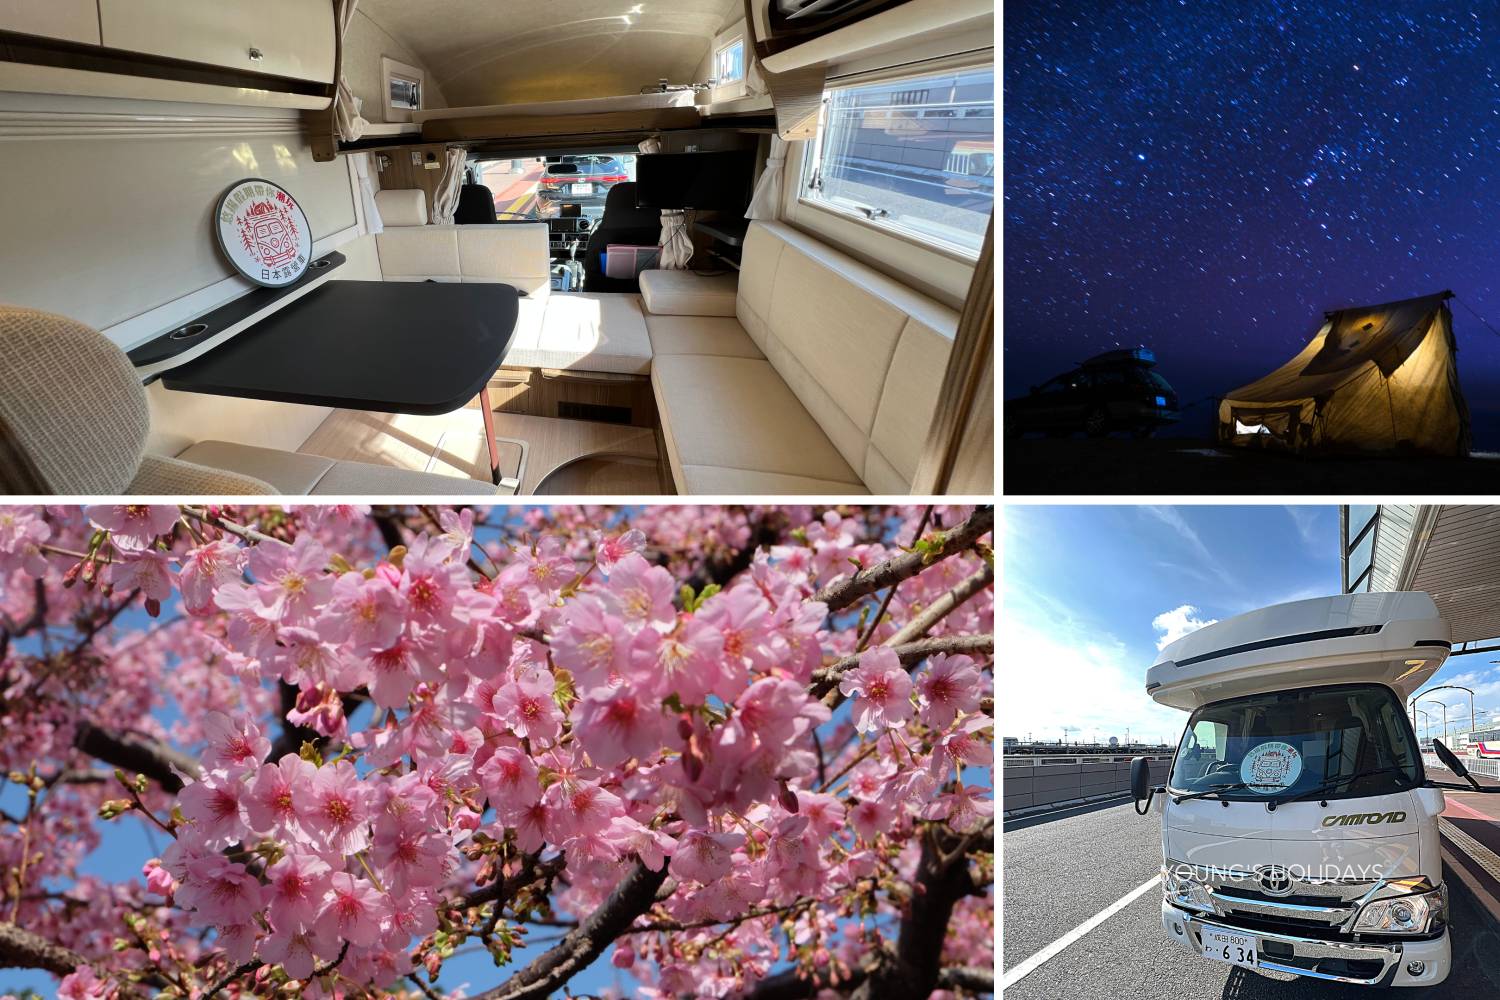 【Tokyo 】Japan 5ppl RV Caravan 24 hours Rental Experience(VT5)